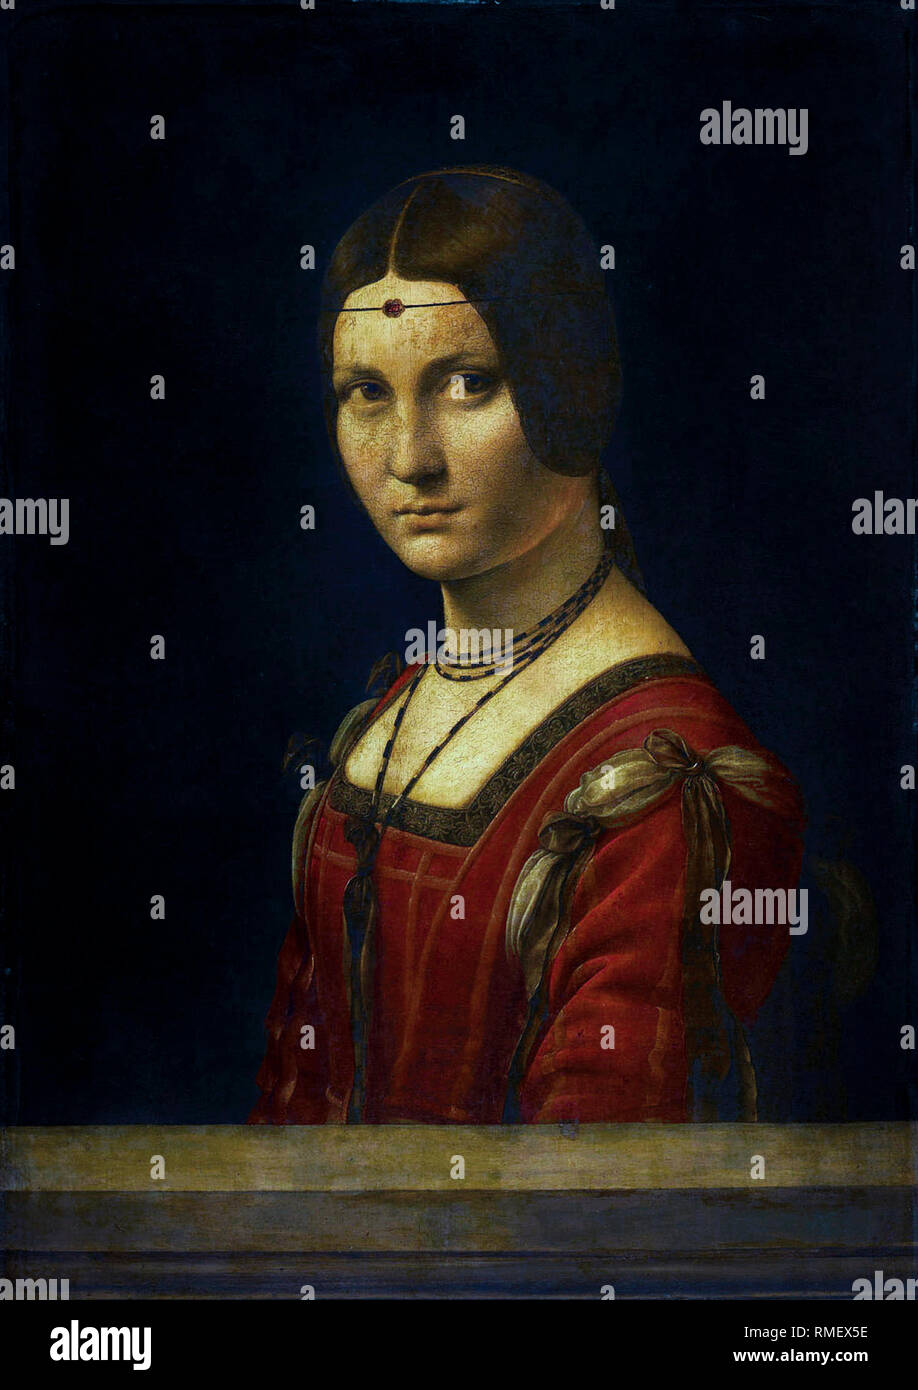 Leonardo da Vinci, Portrait d'une femme inconnue, la Belle Ferronnière, peinture vers 1496 Banque D'Images